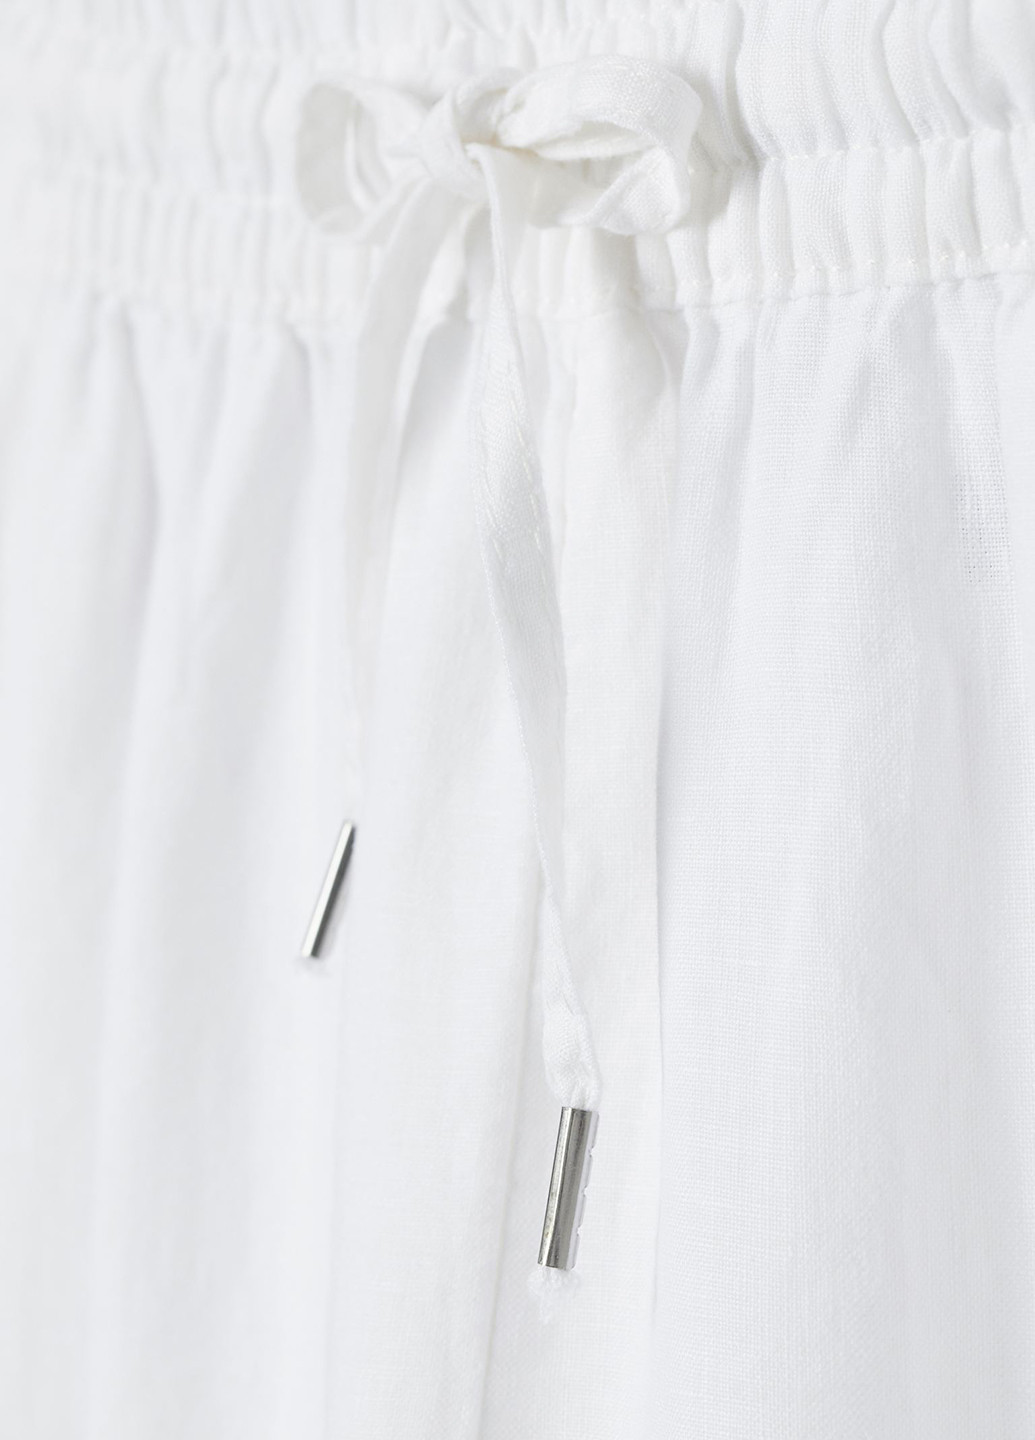 Штани H&M прямі однотонні білі кежуали льон